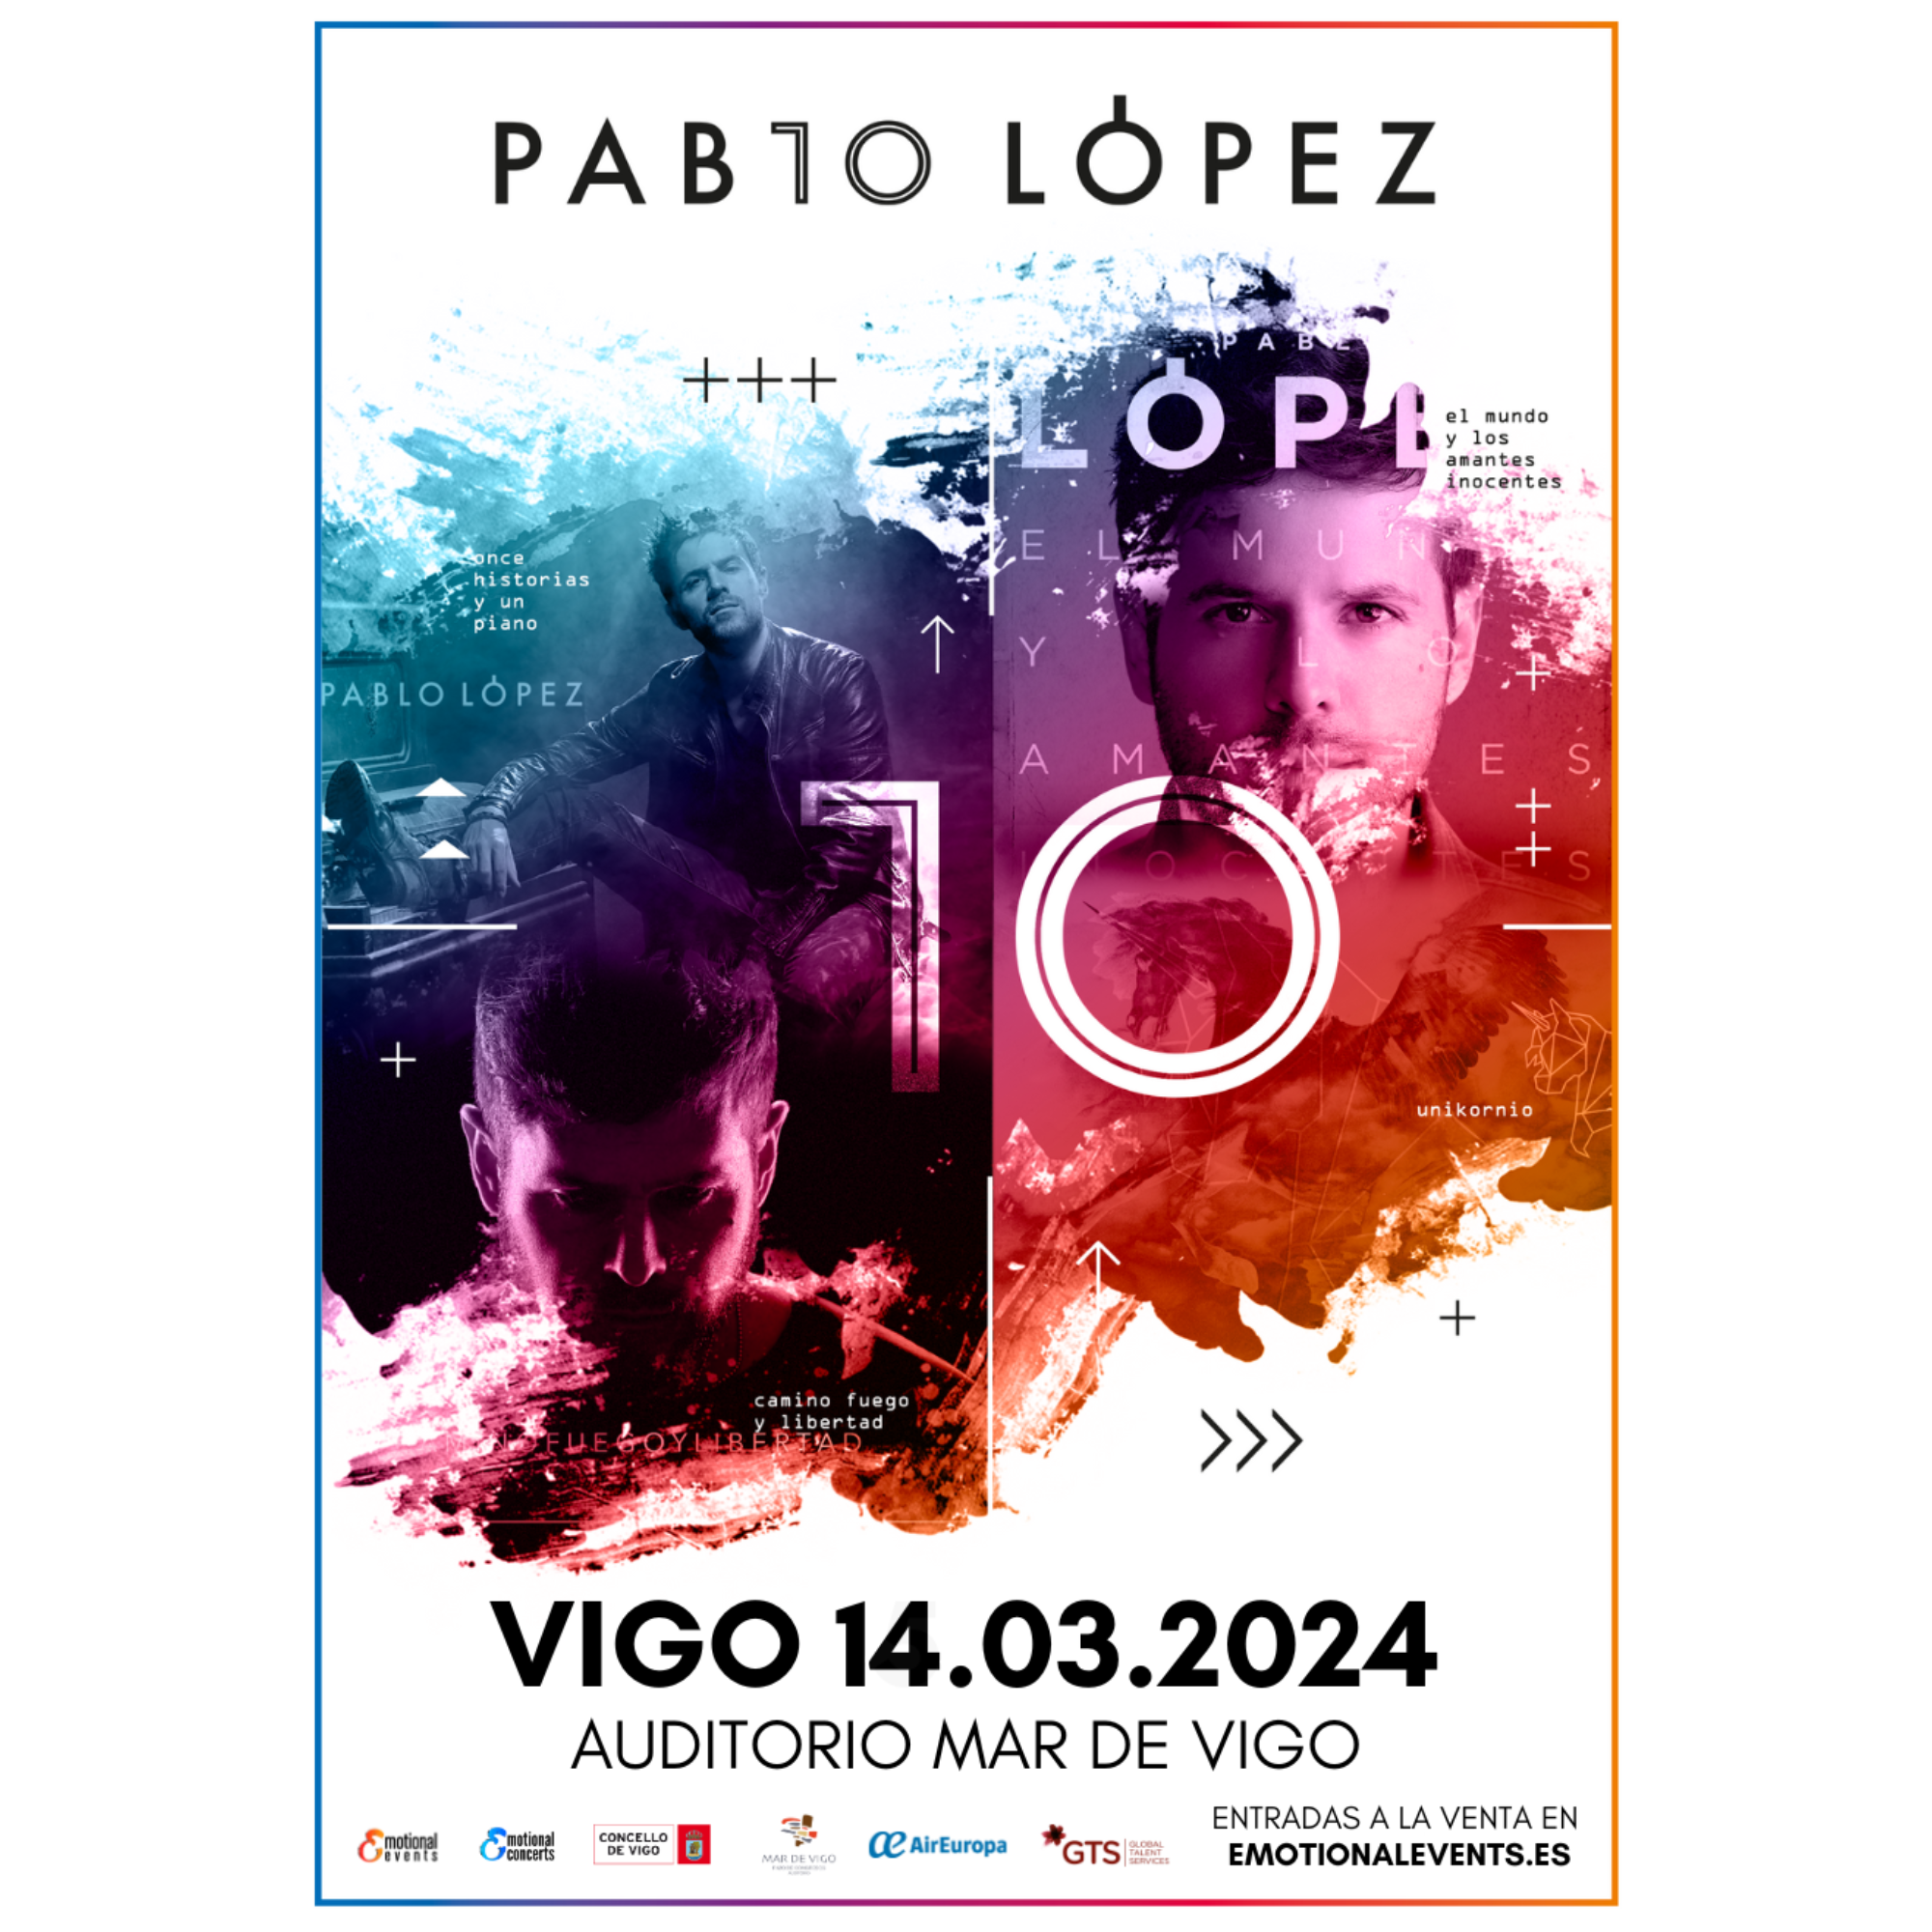 Ás 14:00h. saen á venda as entradas para o novo concerto de Pablo López en Vigo